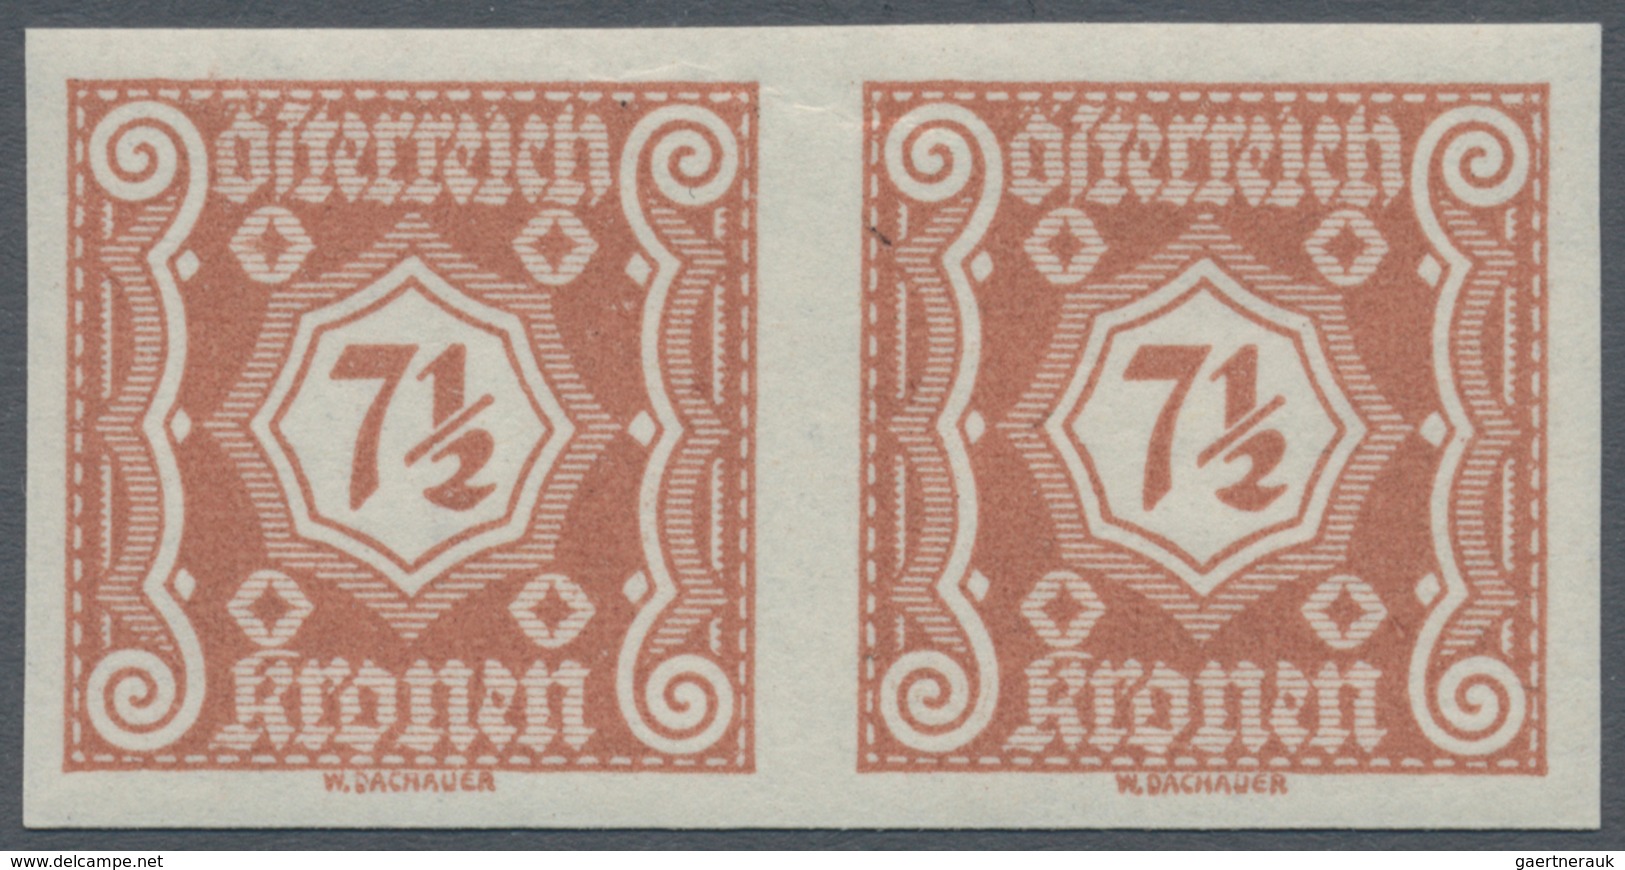 Österreich - Portomarken: 1922, Ziffern, Komplette Serie Von 15 Werten In Ungezähnten Waagerechten P - Portomarken